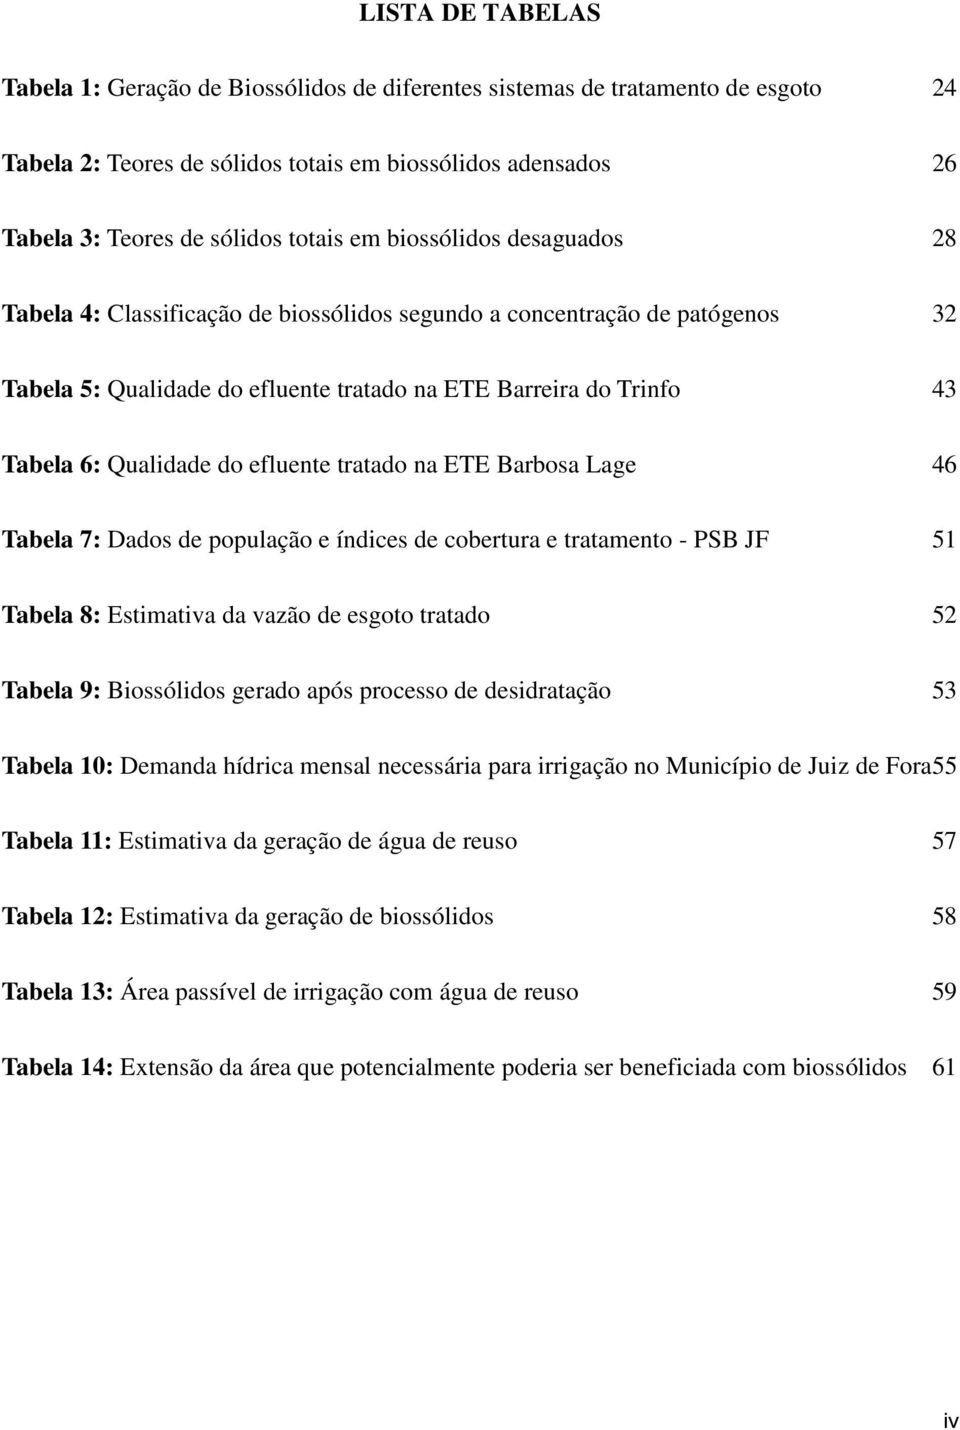 efluente tratado na ETE Barbosa Lage 46 Tabela 7: Dados de população e índices de cobertura e tratamento - PSB JF 51 Tabela 8: Estimativa da vazão de esgoto tratado 52 Tabela 9: Biossólidos gerado